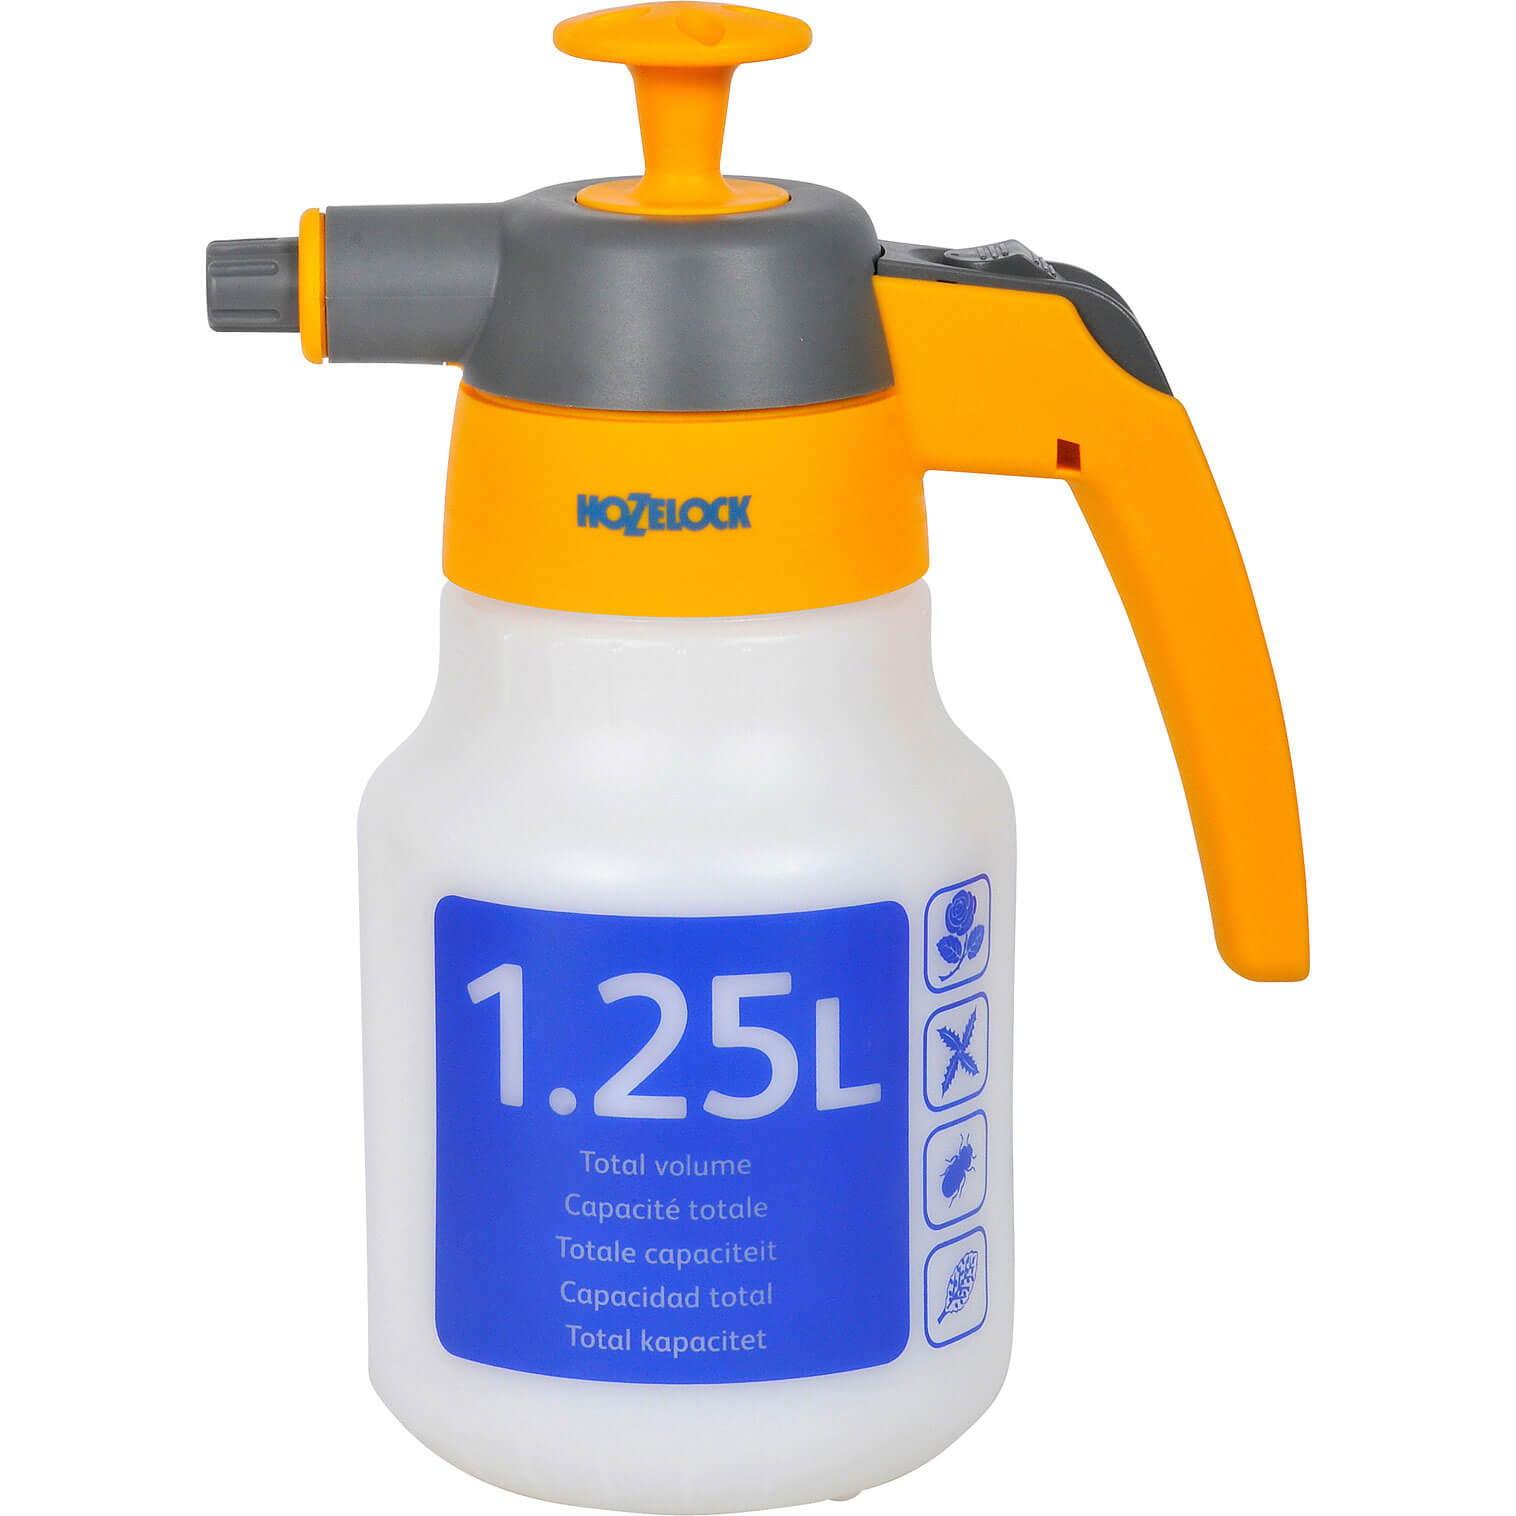 Hozelock Spraymist 1.25 Litre Pressure Water Sprayer